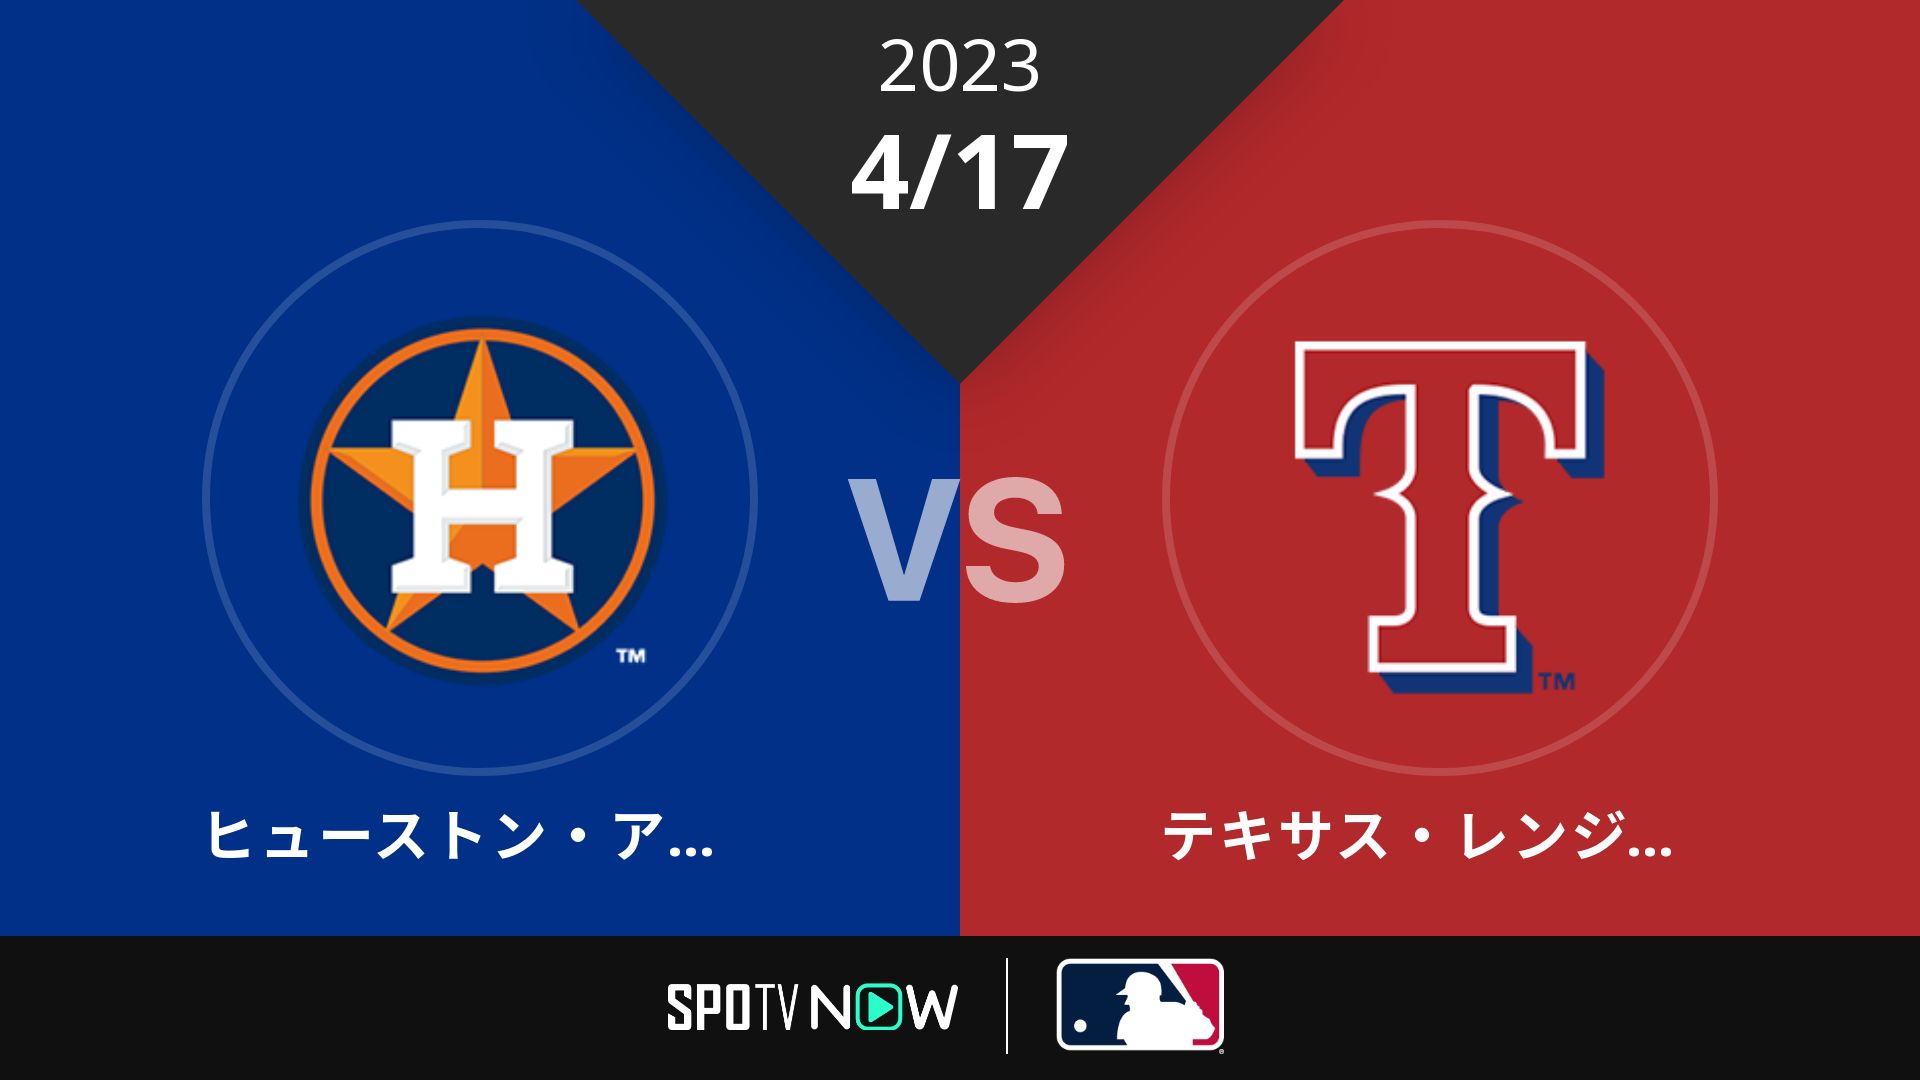 2023/4/17 アストロズ vs レンジャーズ [MLB]